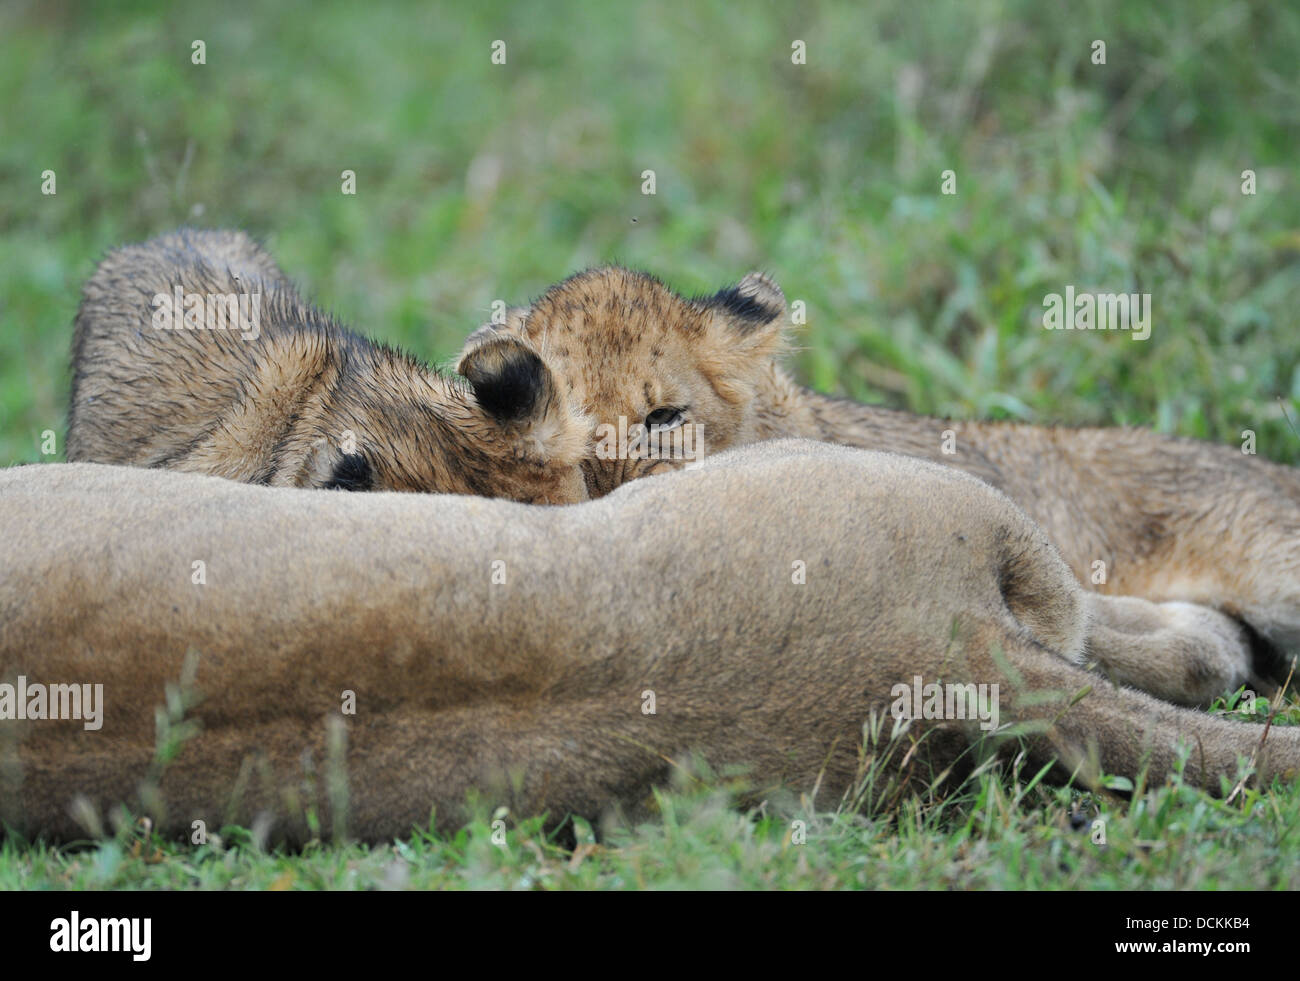 Cachorros de león bebiendo leche de su madre Foto de stock